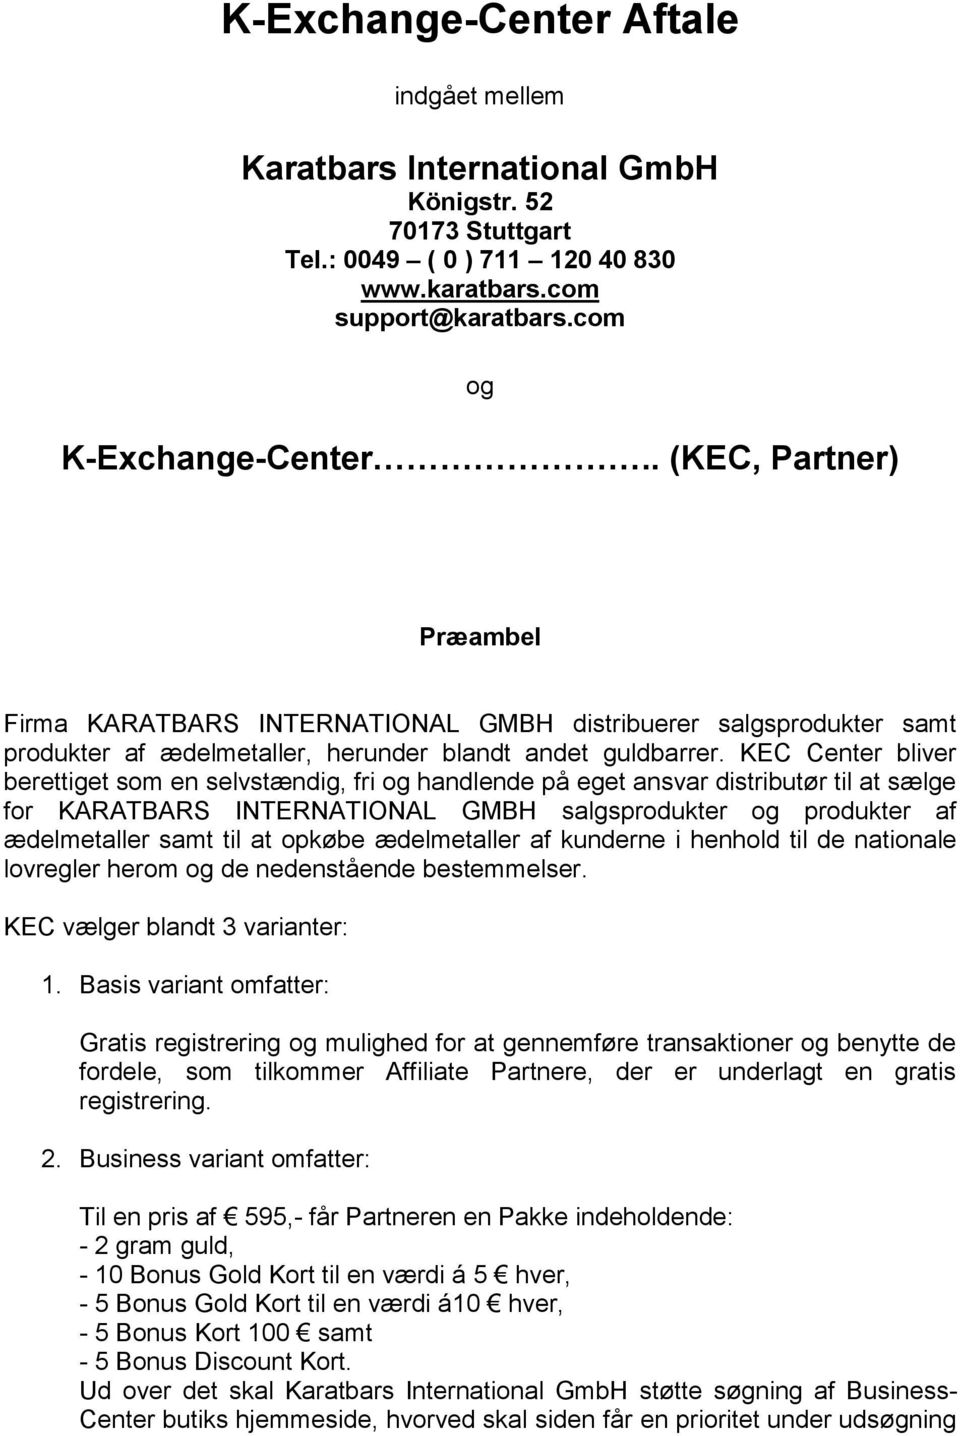 KEC Center bliver berettiget som en selvstændig, fri og handlende på eget ansvar distributør til at sælge for KARATBARS INTERNATIONAL GMBH salgsprodukter og produkter af ædelmetaller samt til at